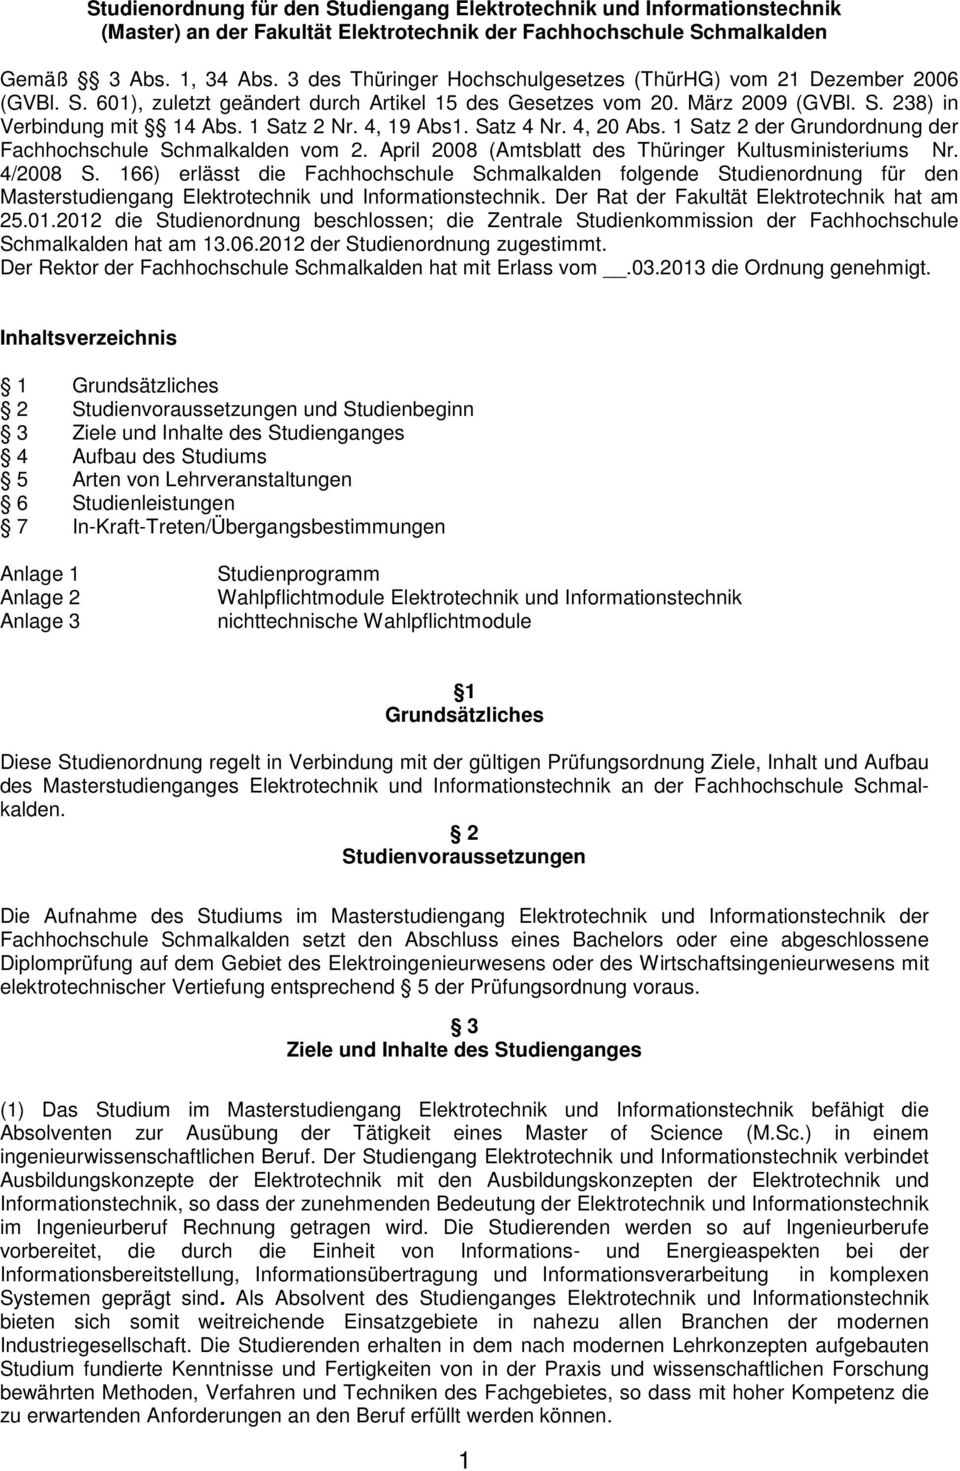 4, 19 Abs1. Satz 4 Nr. 4, 20 Abs. 1 Satz 2 der Grundordnung der Fachhochschule Schmalkalden vom 2. April 2008 (Amtsblatt des Thüringer Kultusministeriums Nr. 4/2008 S.